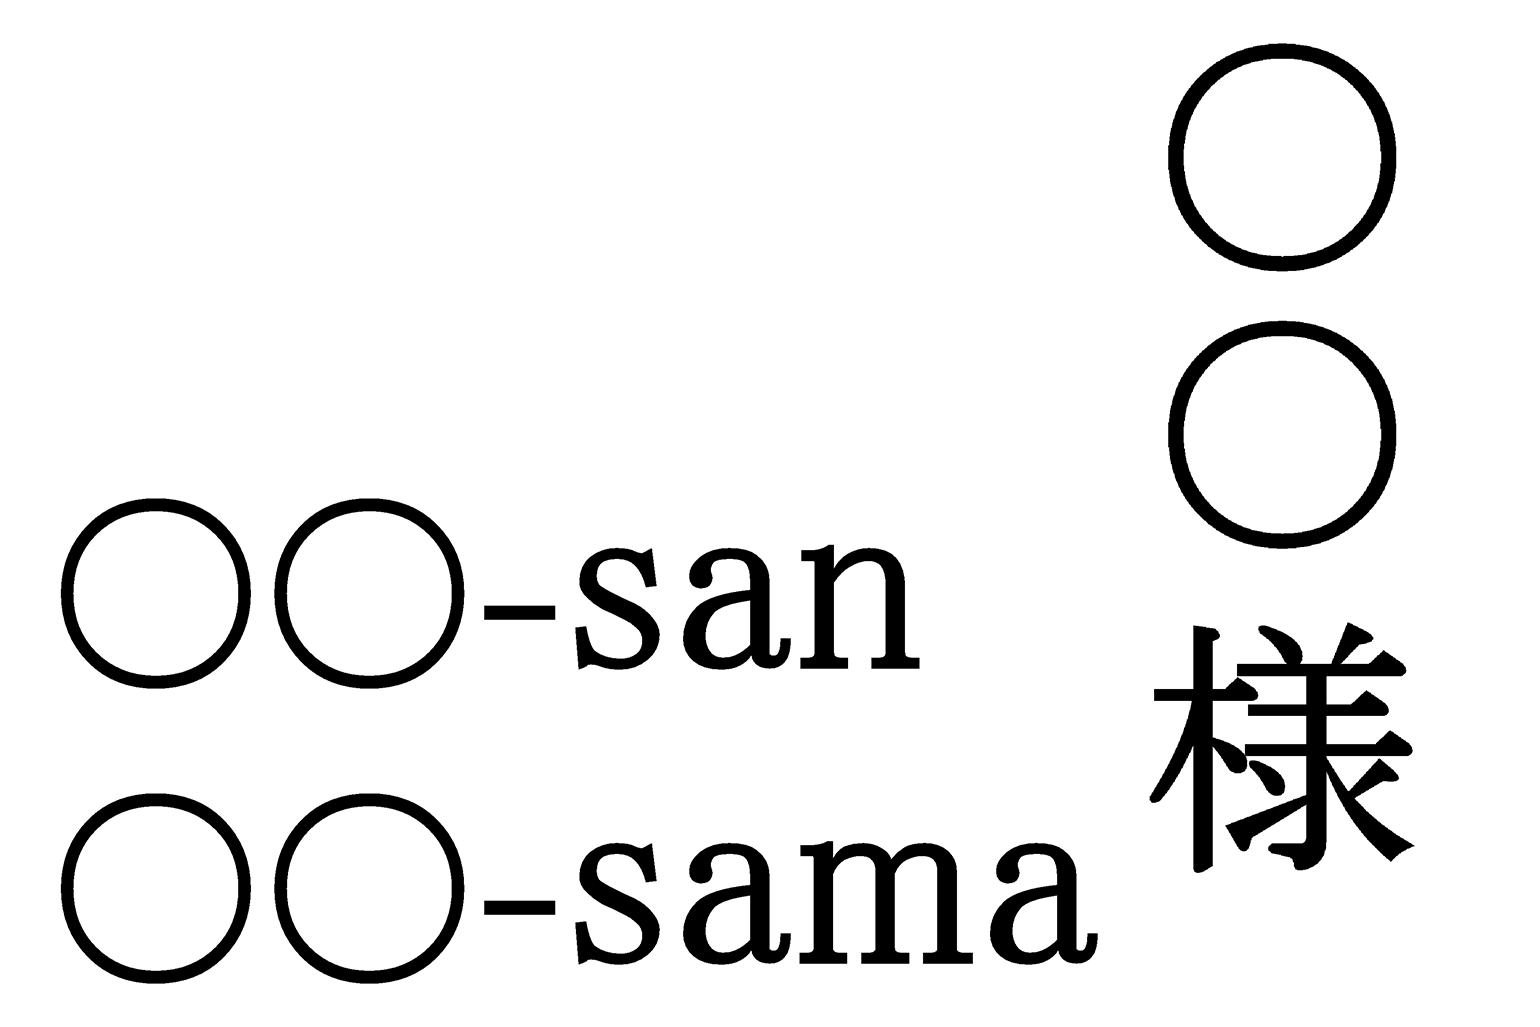 ○○-san／○○-sama